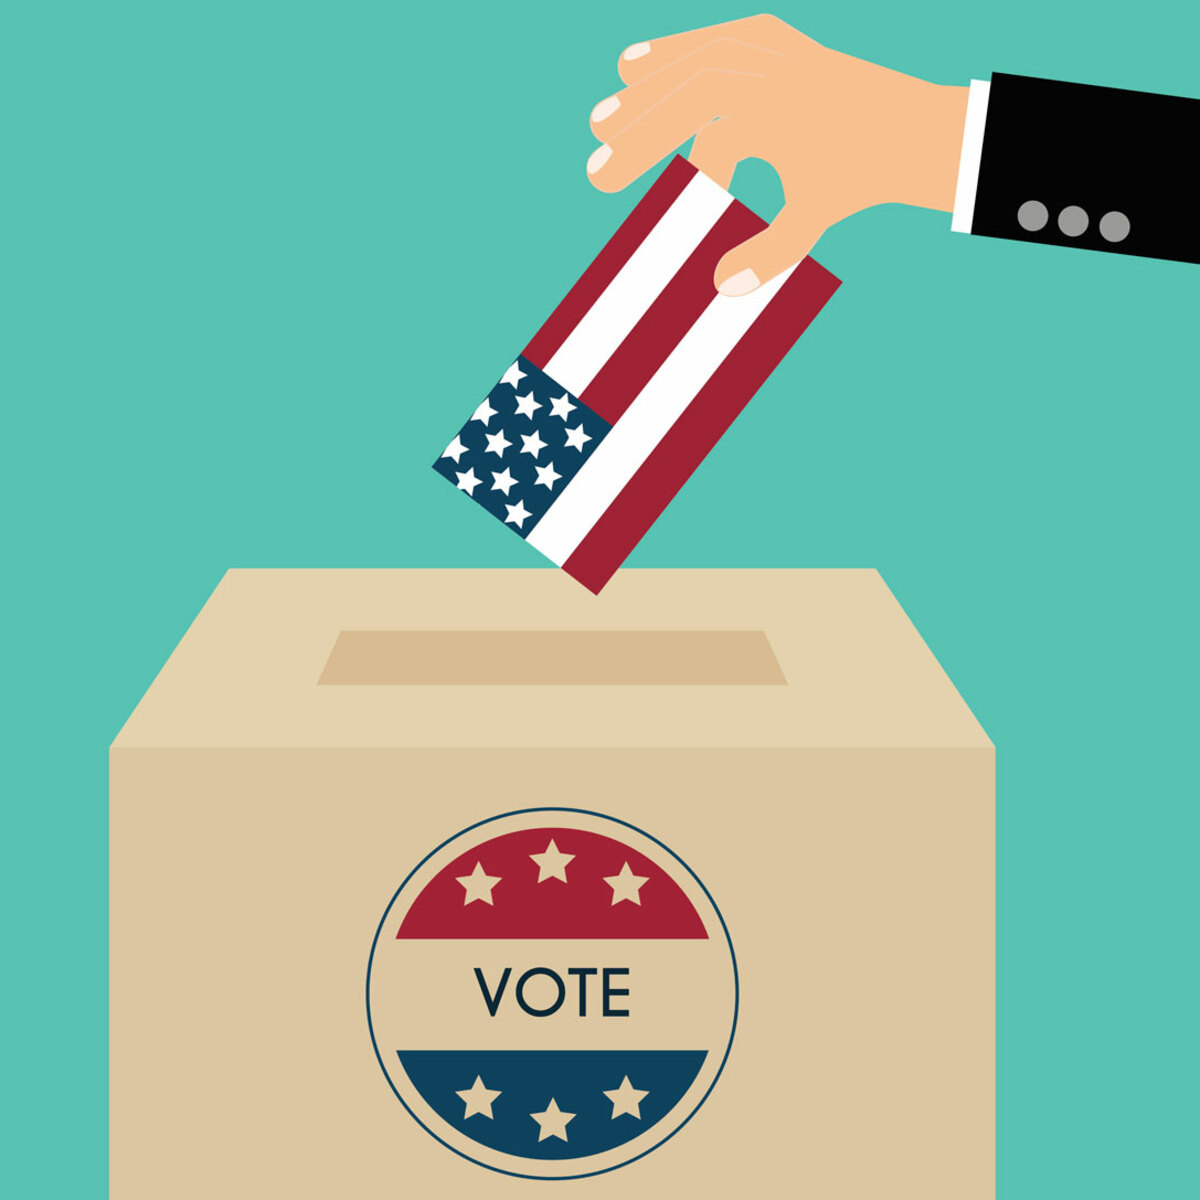 Vote day. Vote с флагами. Бокс иллюстрации. Фото election Day вектор. Vote Box.